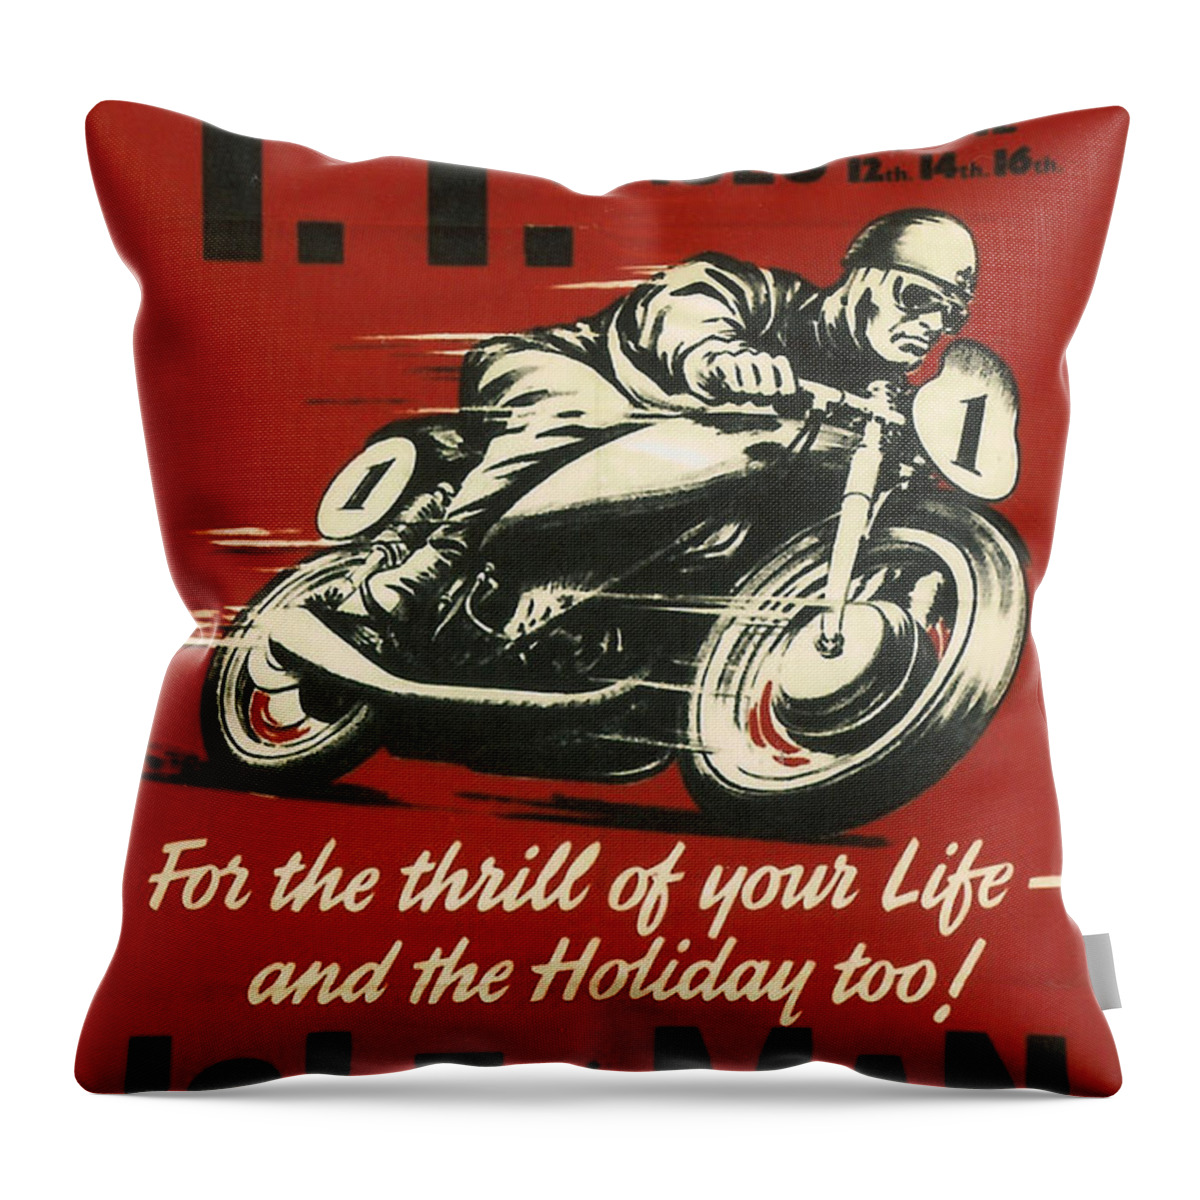 Tt Throw Pillow featuring the digital art TT Races 1961 by Georgia Fowler